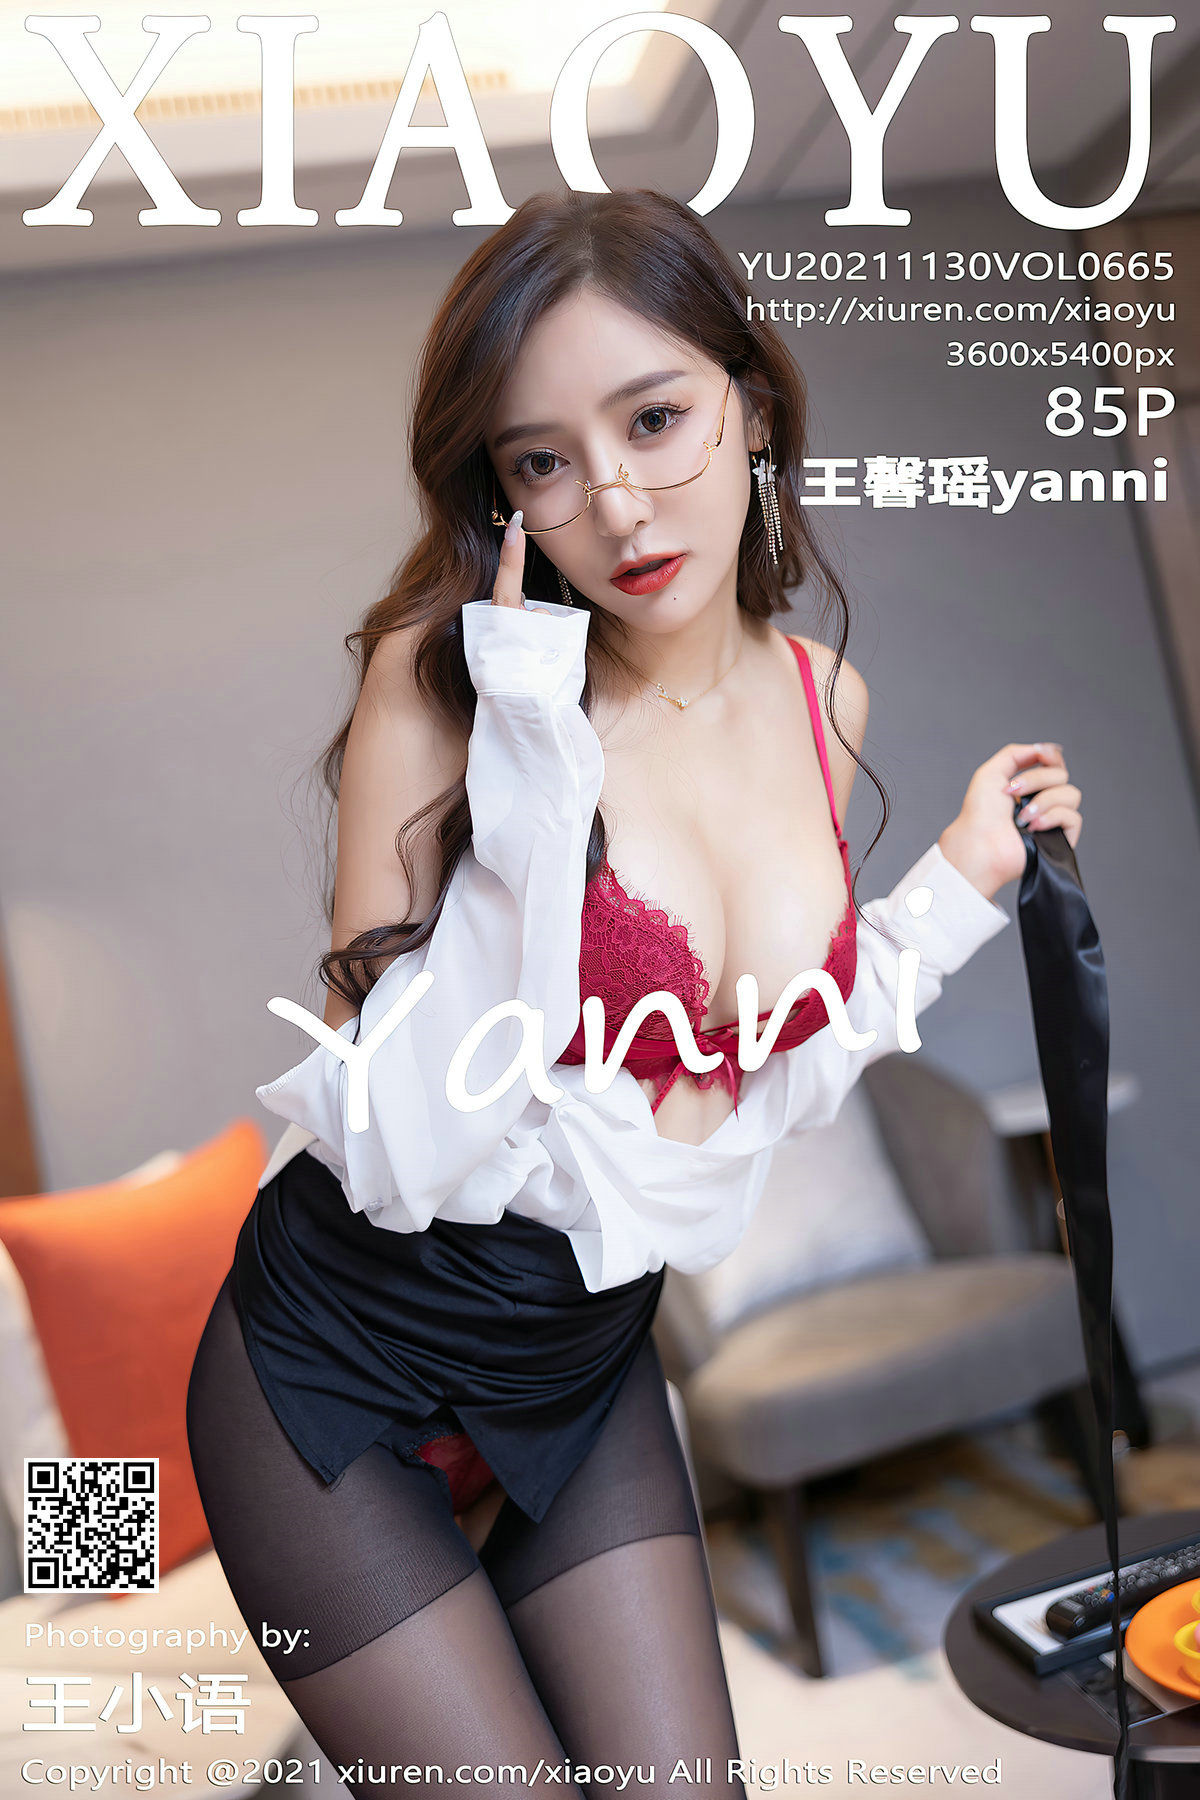 [语画界XIAOYU] Vol.665 王馨瑶yanni/(86P)